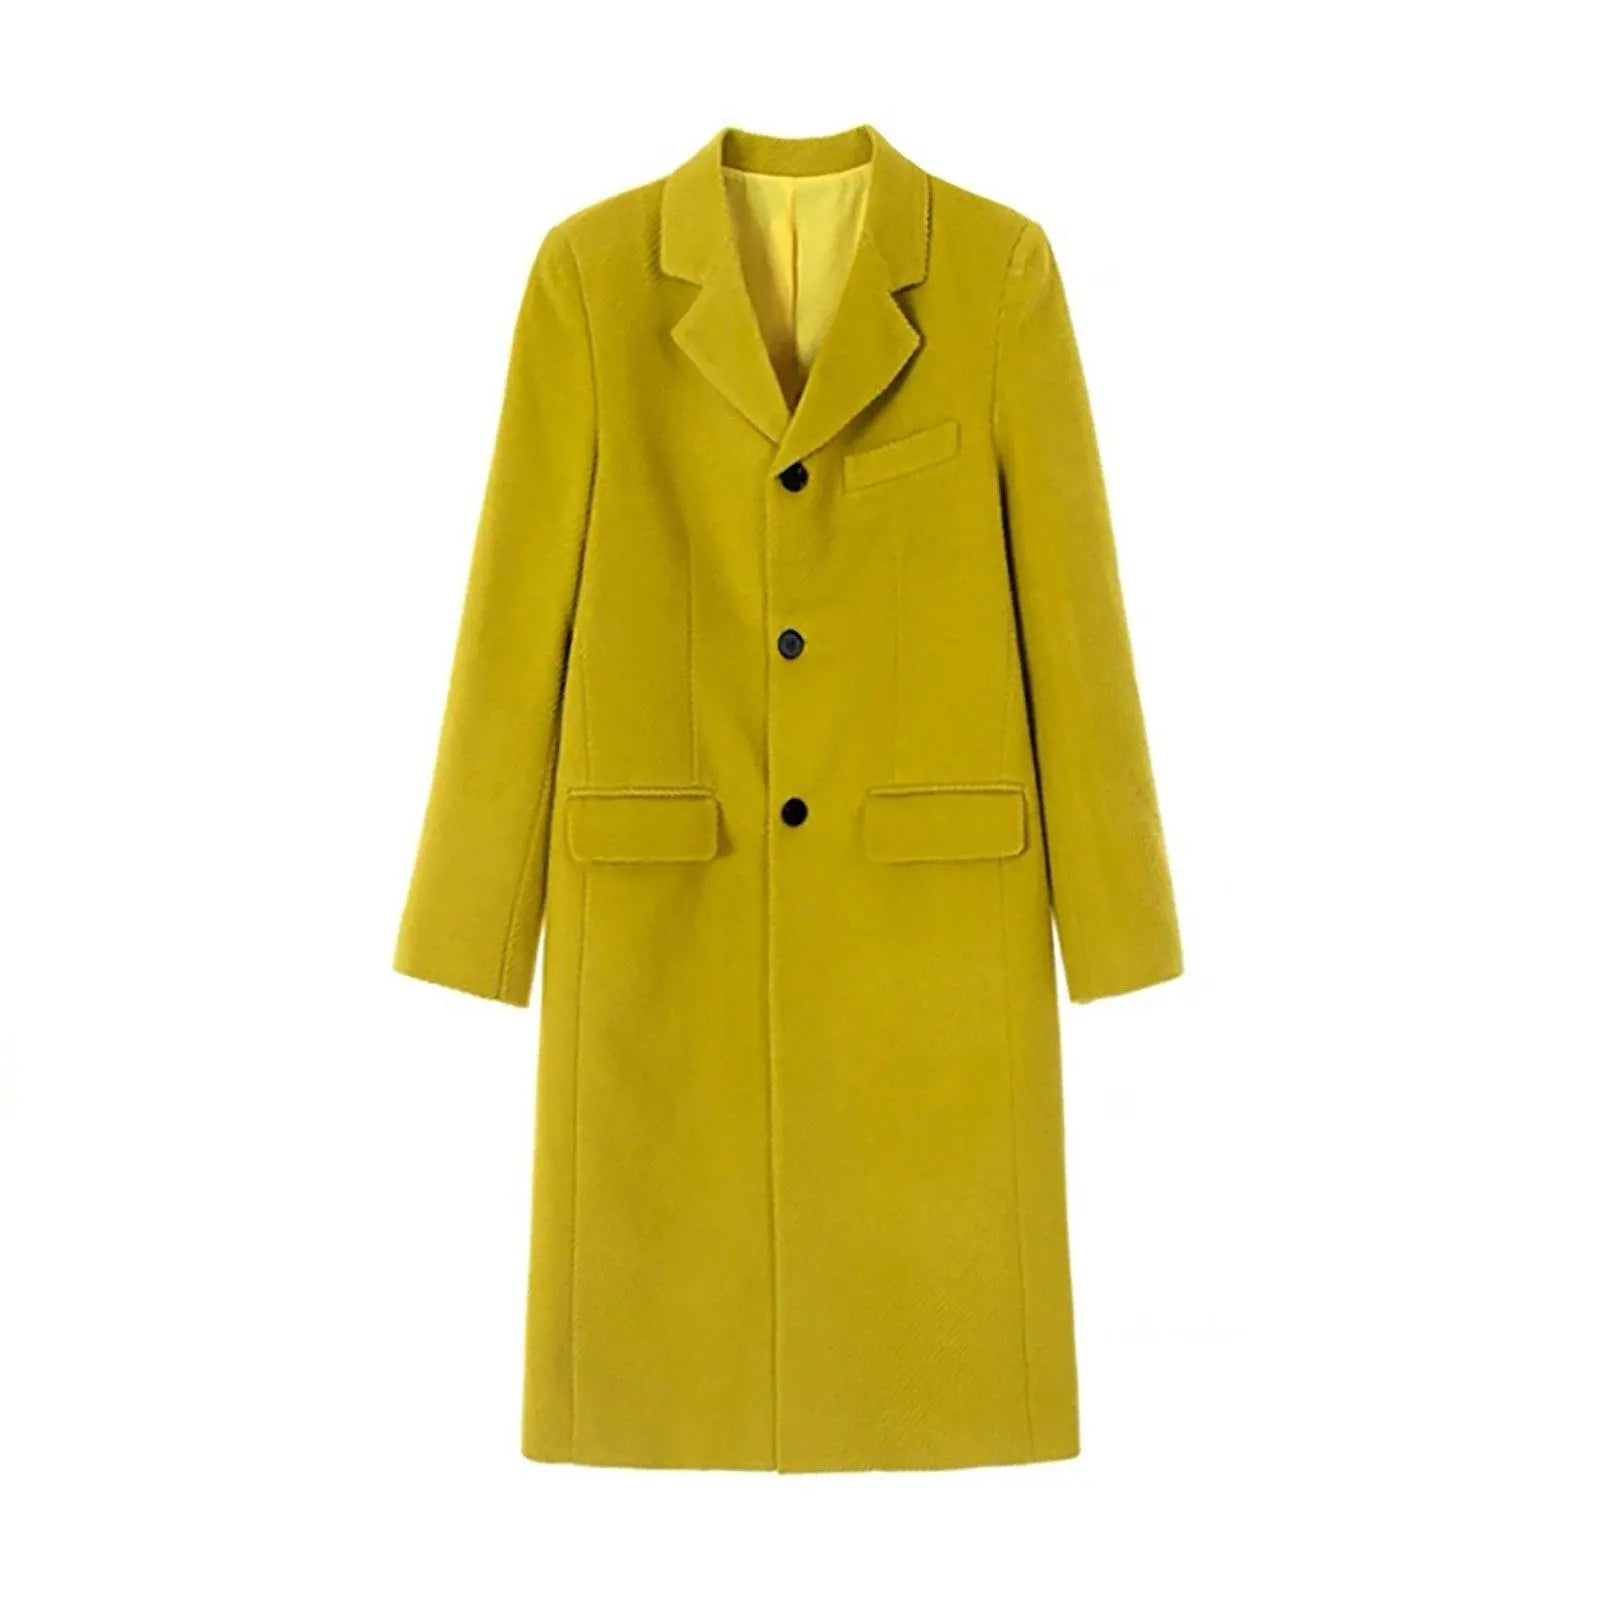 Women Yellow Long Wool Coat,Single breasted Wool Long Coat,Wool Overcoat,Oversize Wool Coat,Warm Winter Coat,Loose Wool Coat,Yellow Coat Vivian Seven